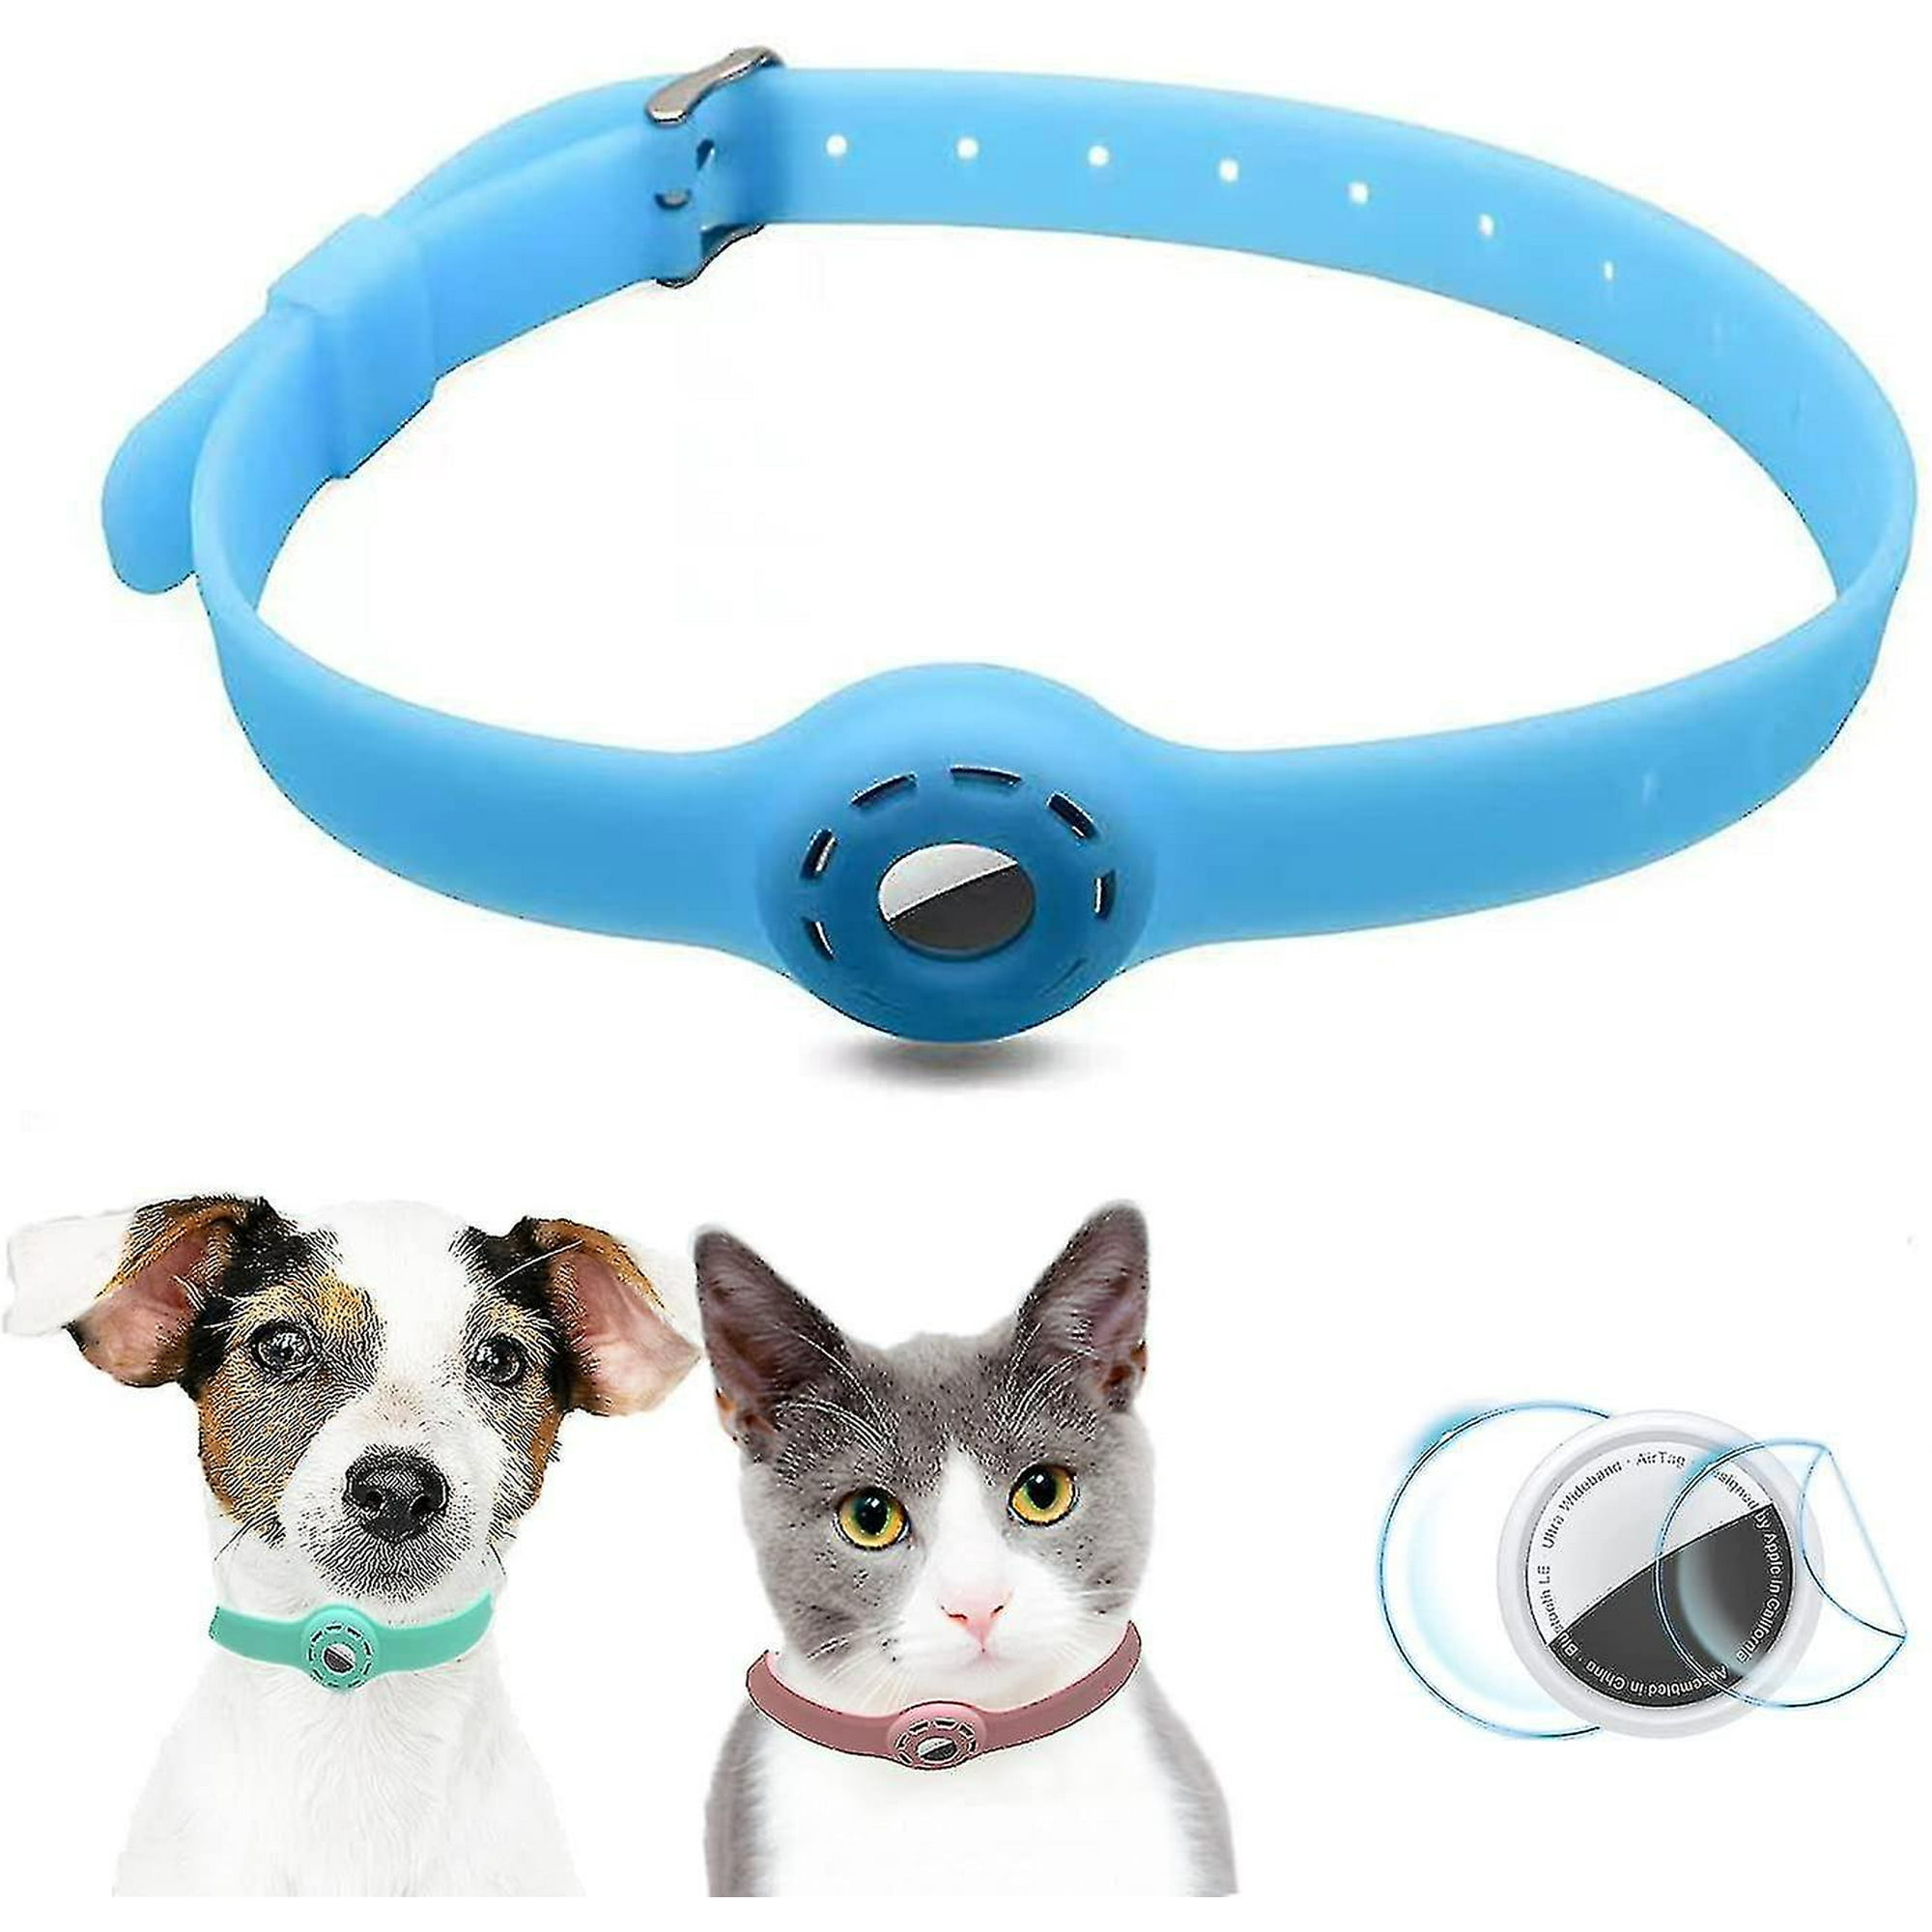 Airtag con soporte en silicona para collar de perro o gato – Peti